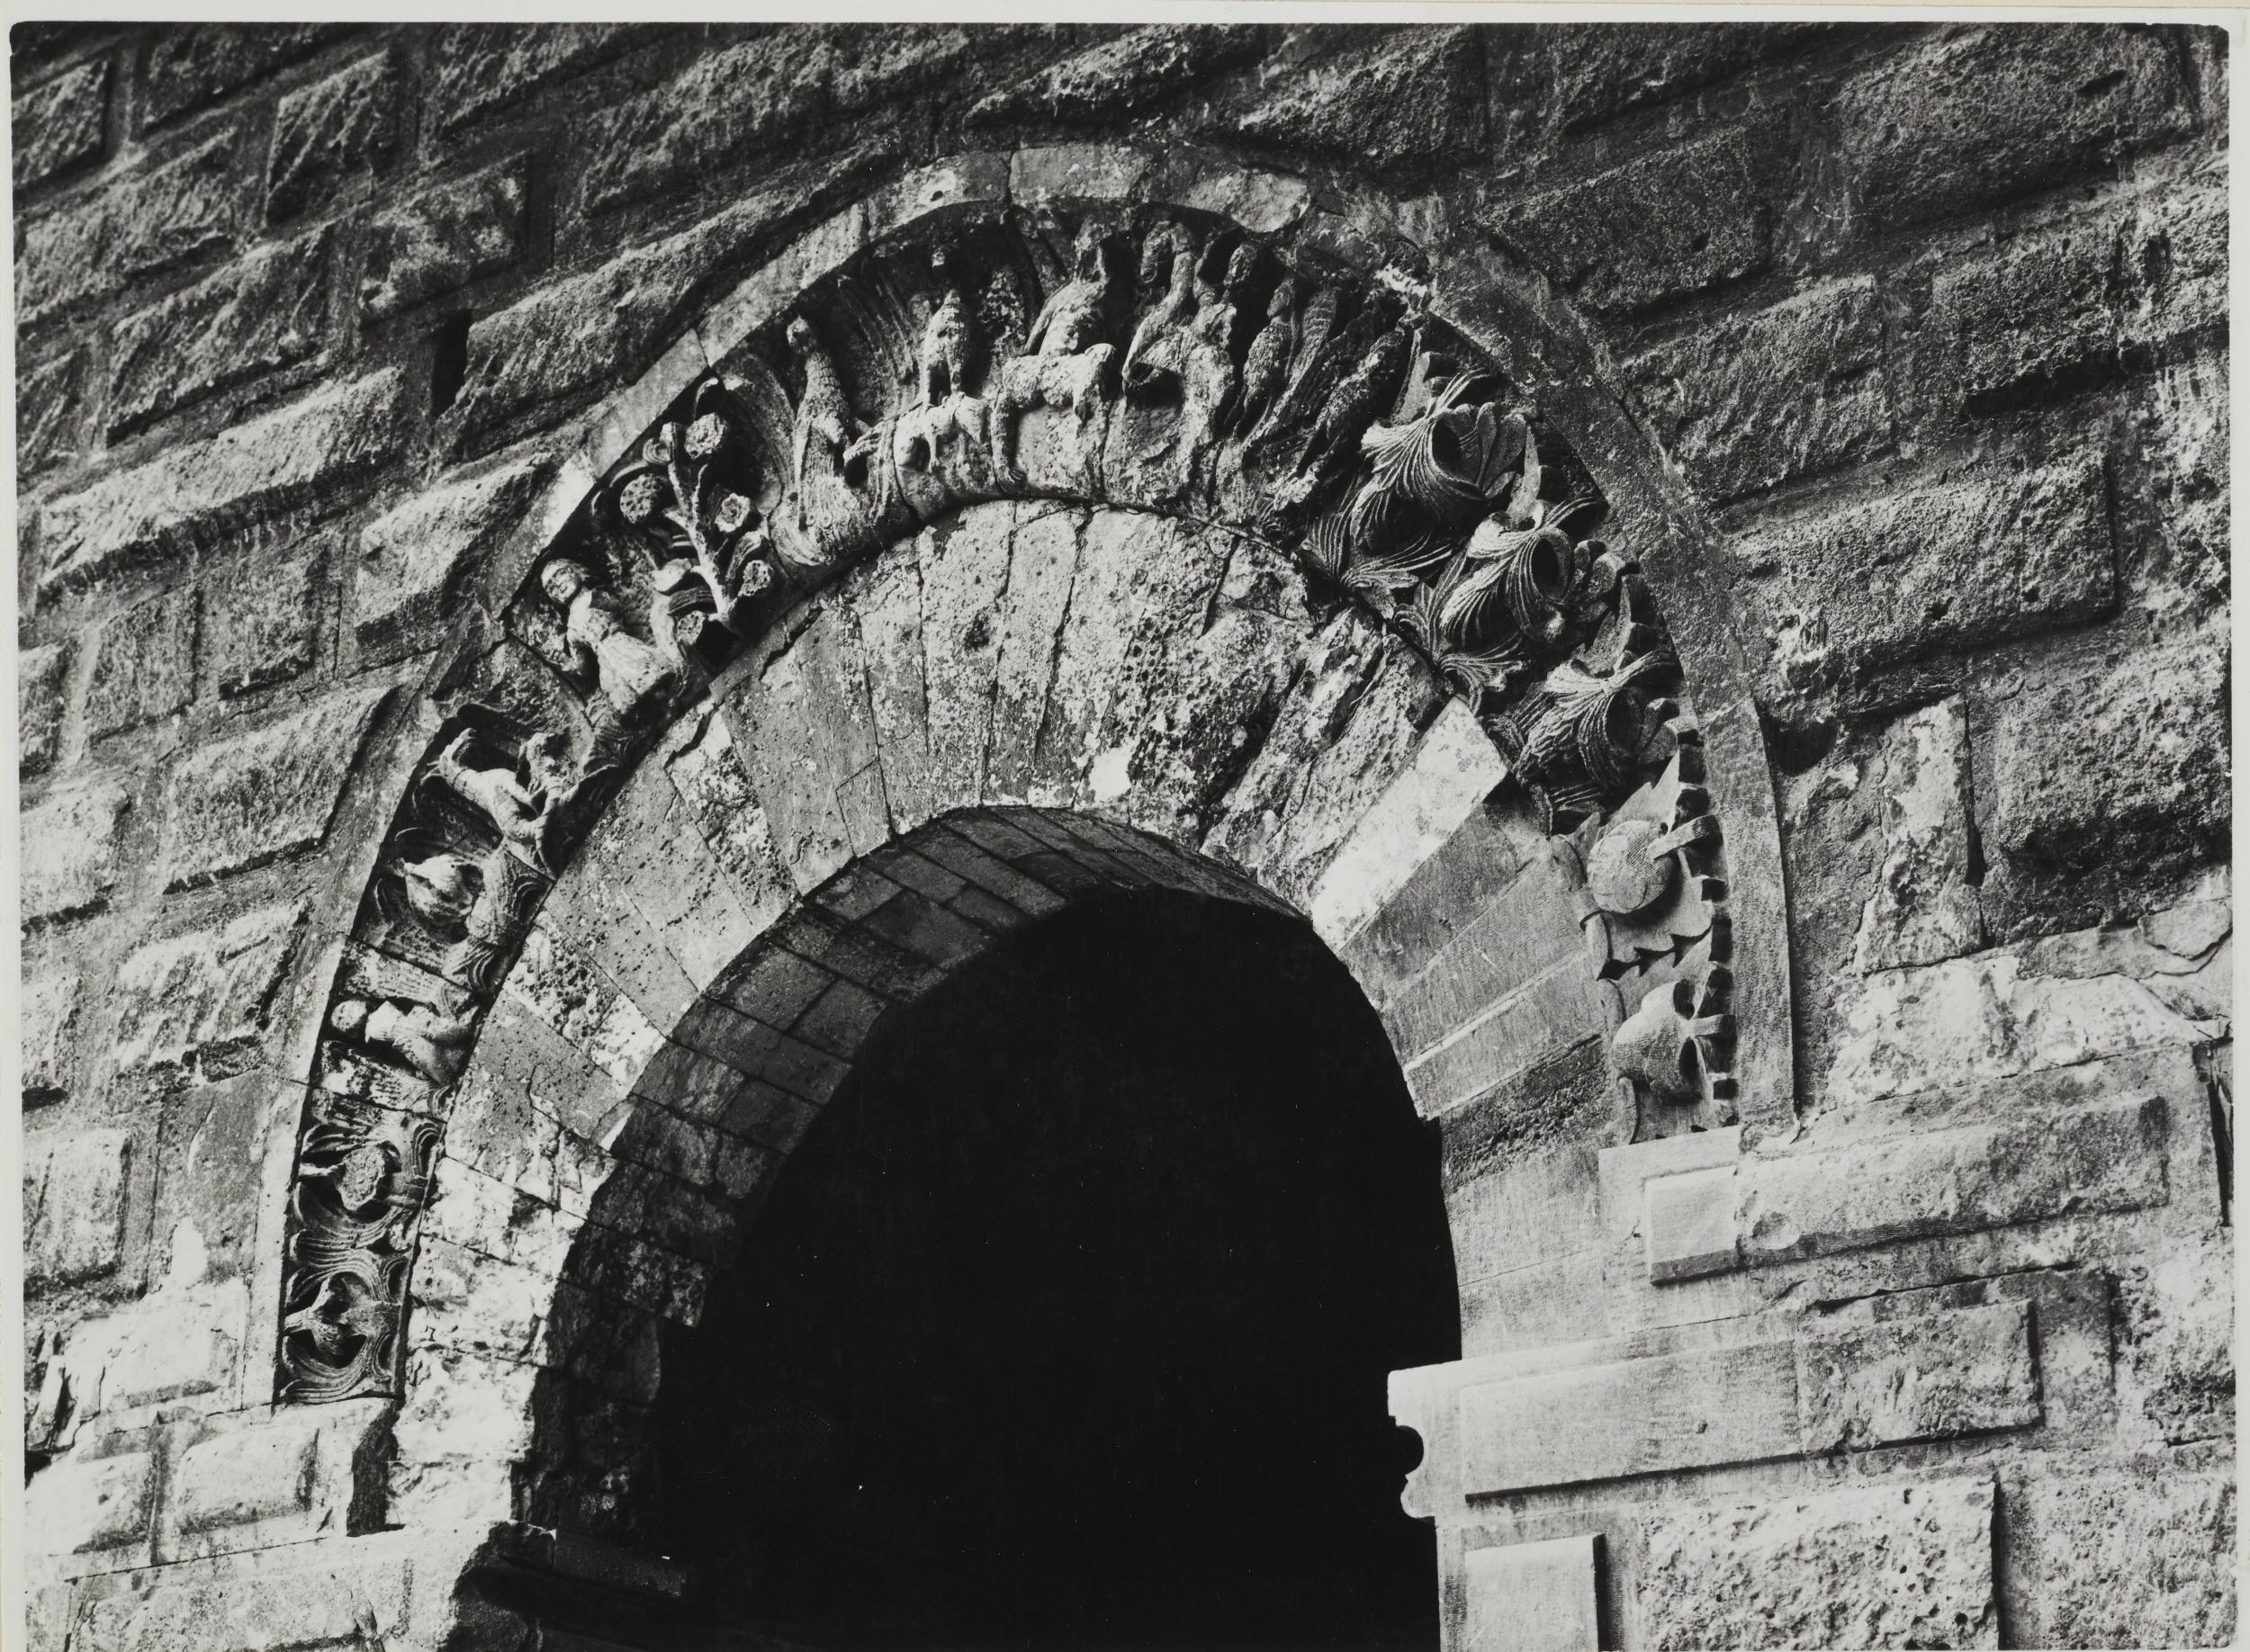 Fotografo non identificato, Bari - Castello Svevo, particolare di una porta, 1951-1975, gelatina ai sali d'argento/carta, MPI6023071B